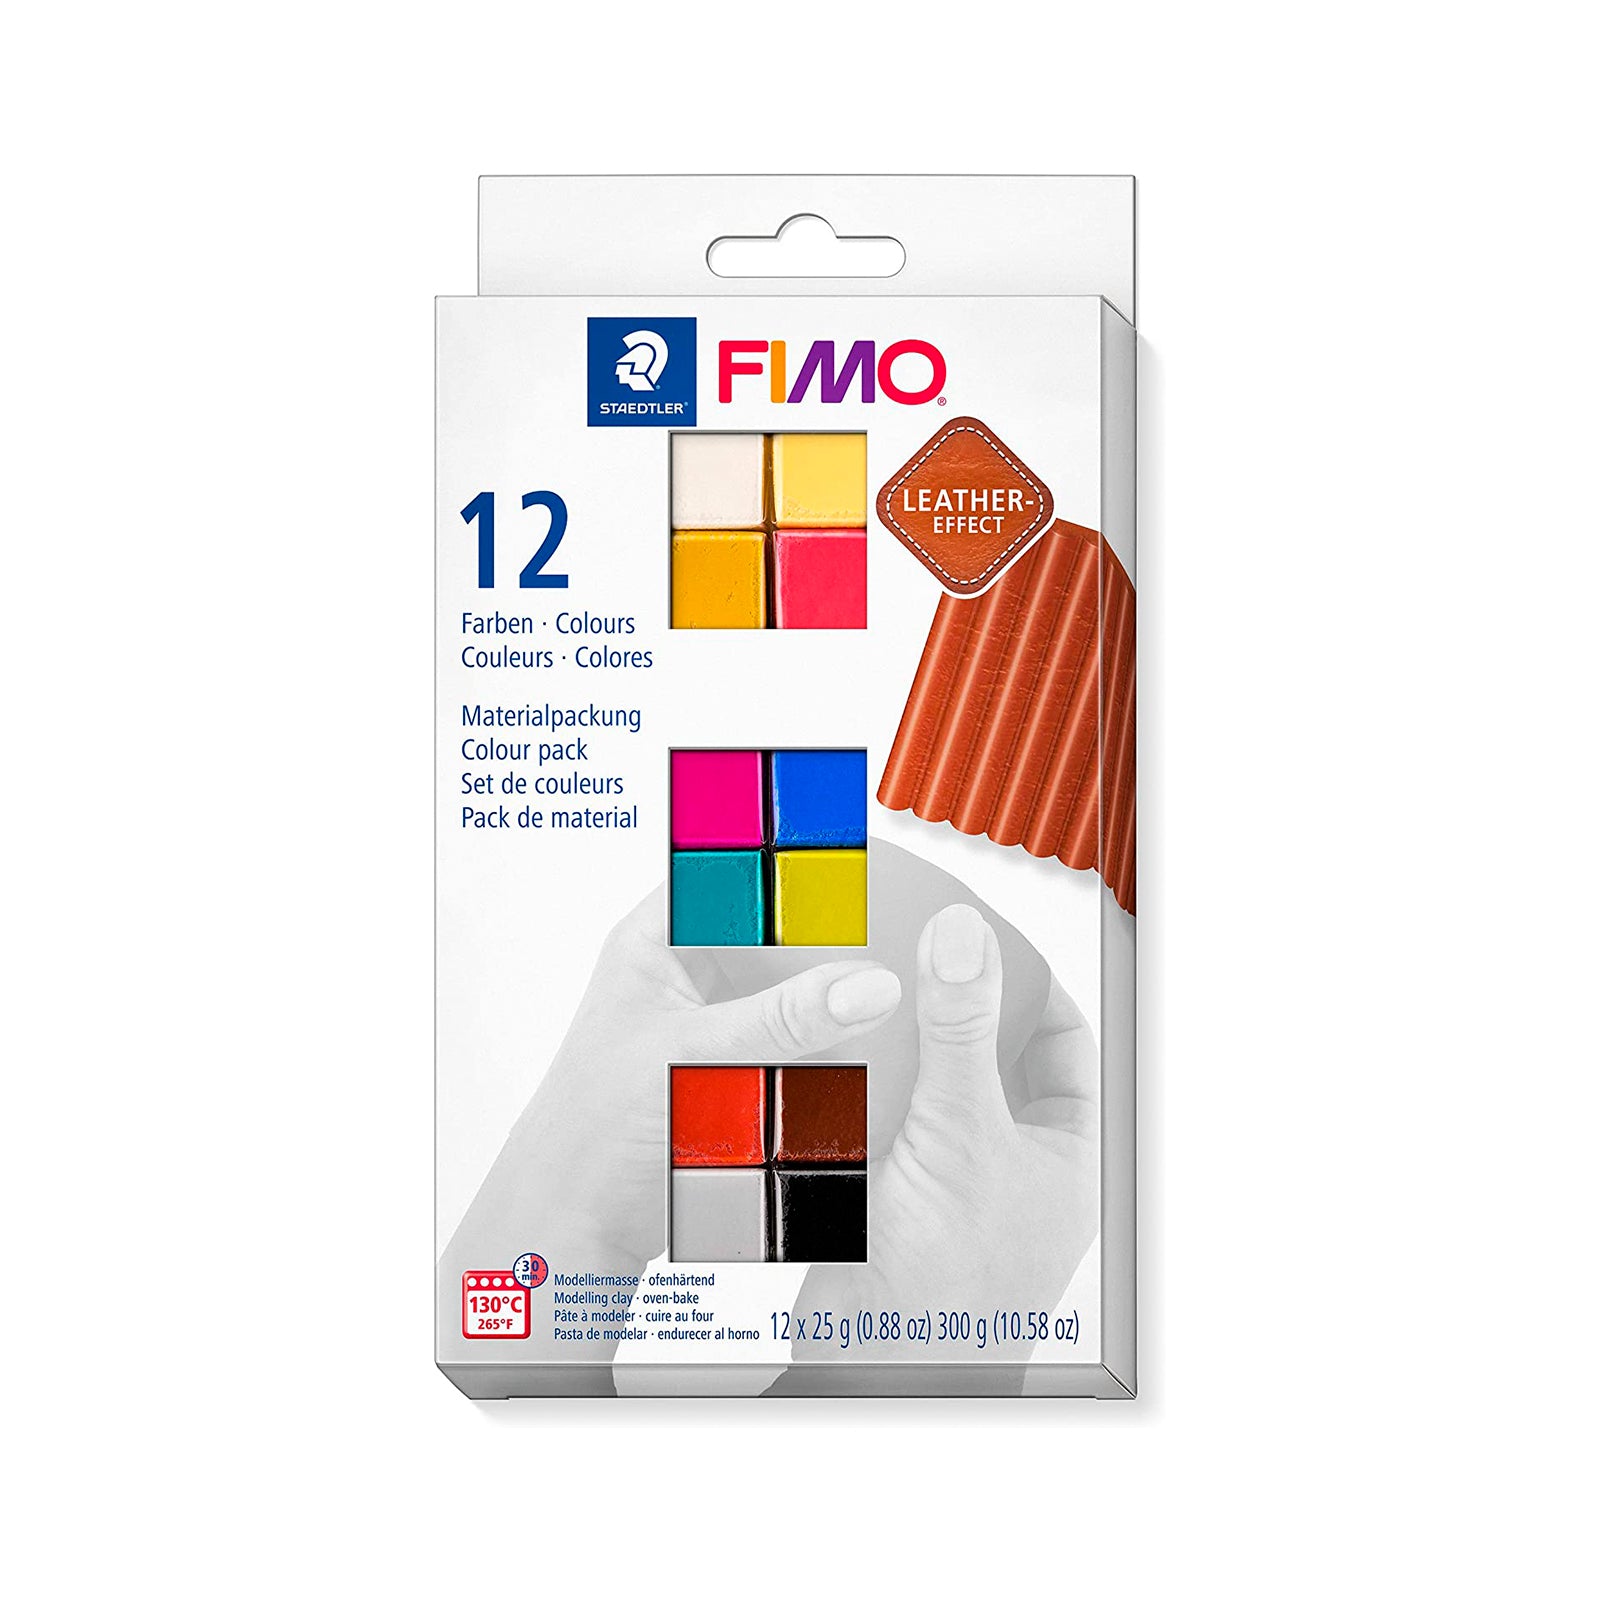 STAEDTLER FIMO Leather - Set de 12 Pastillas de FIMO para Modelar con Efecto Cuero